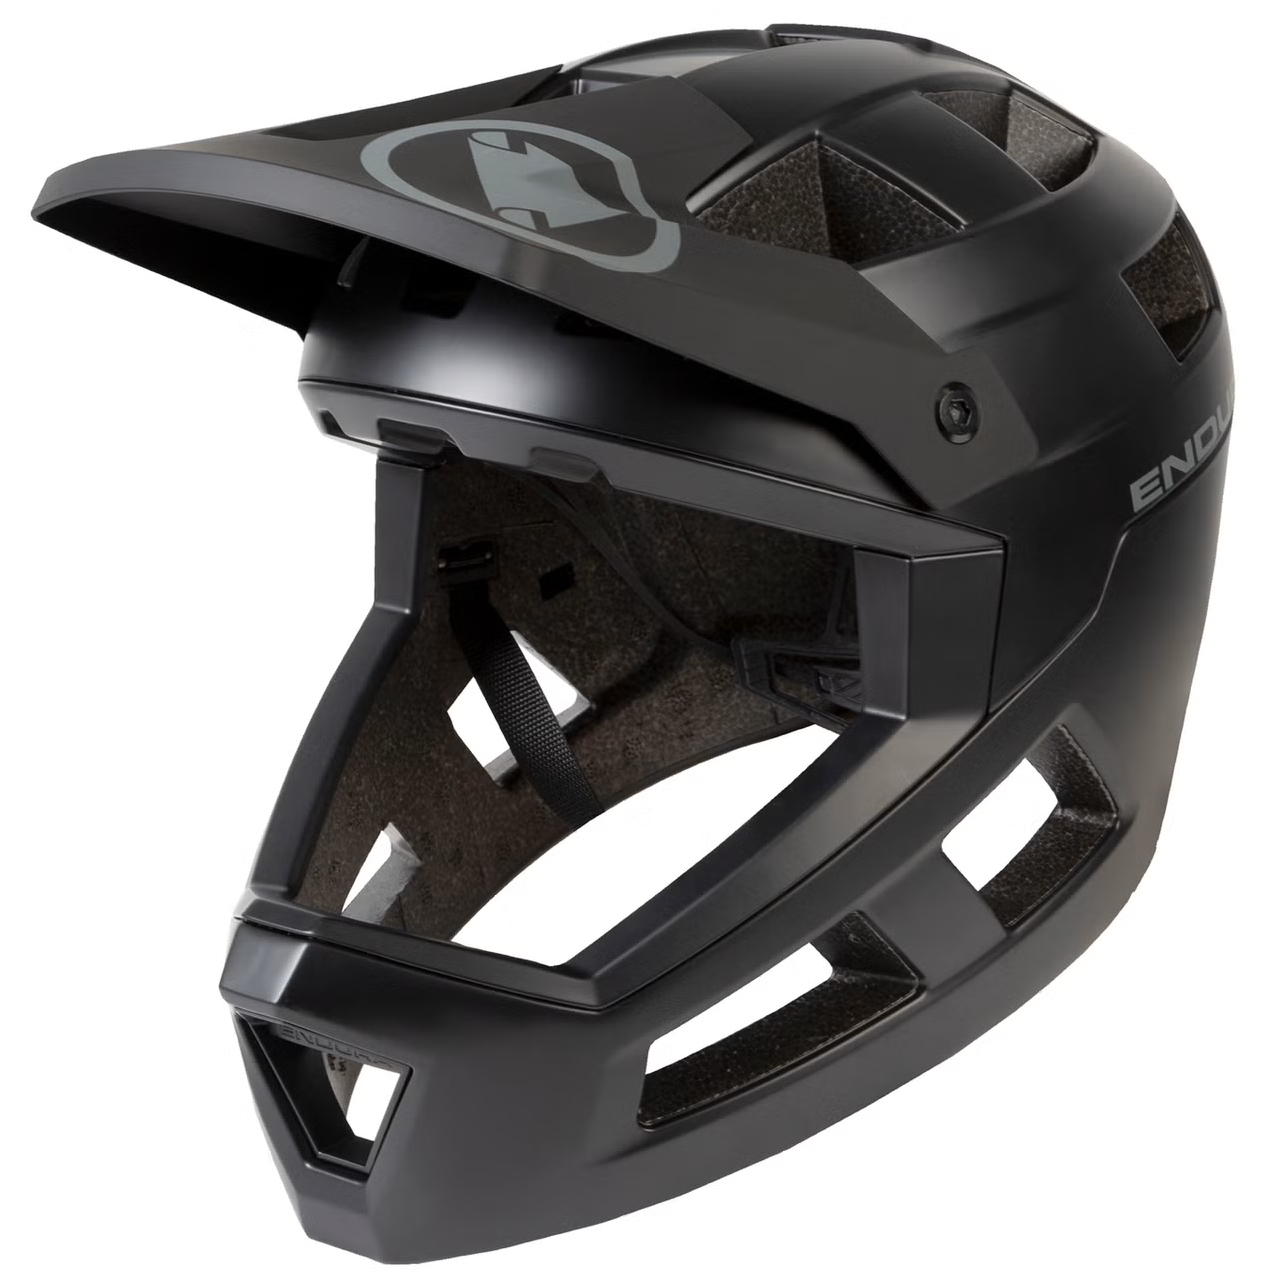 Produktbild von Endura SingleTrack Full Face Helm - schwarz